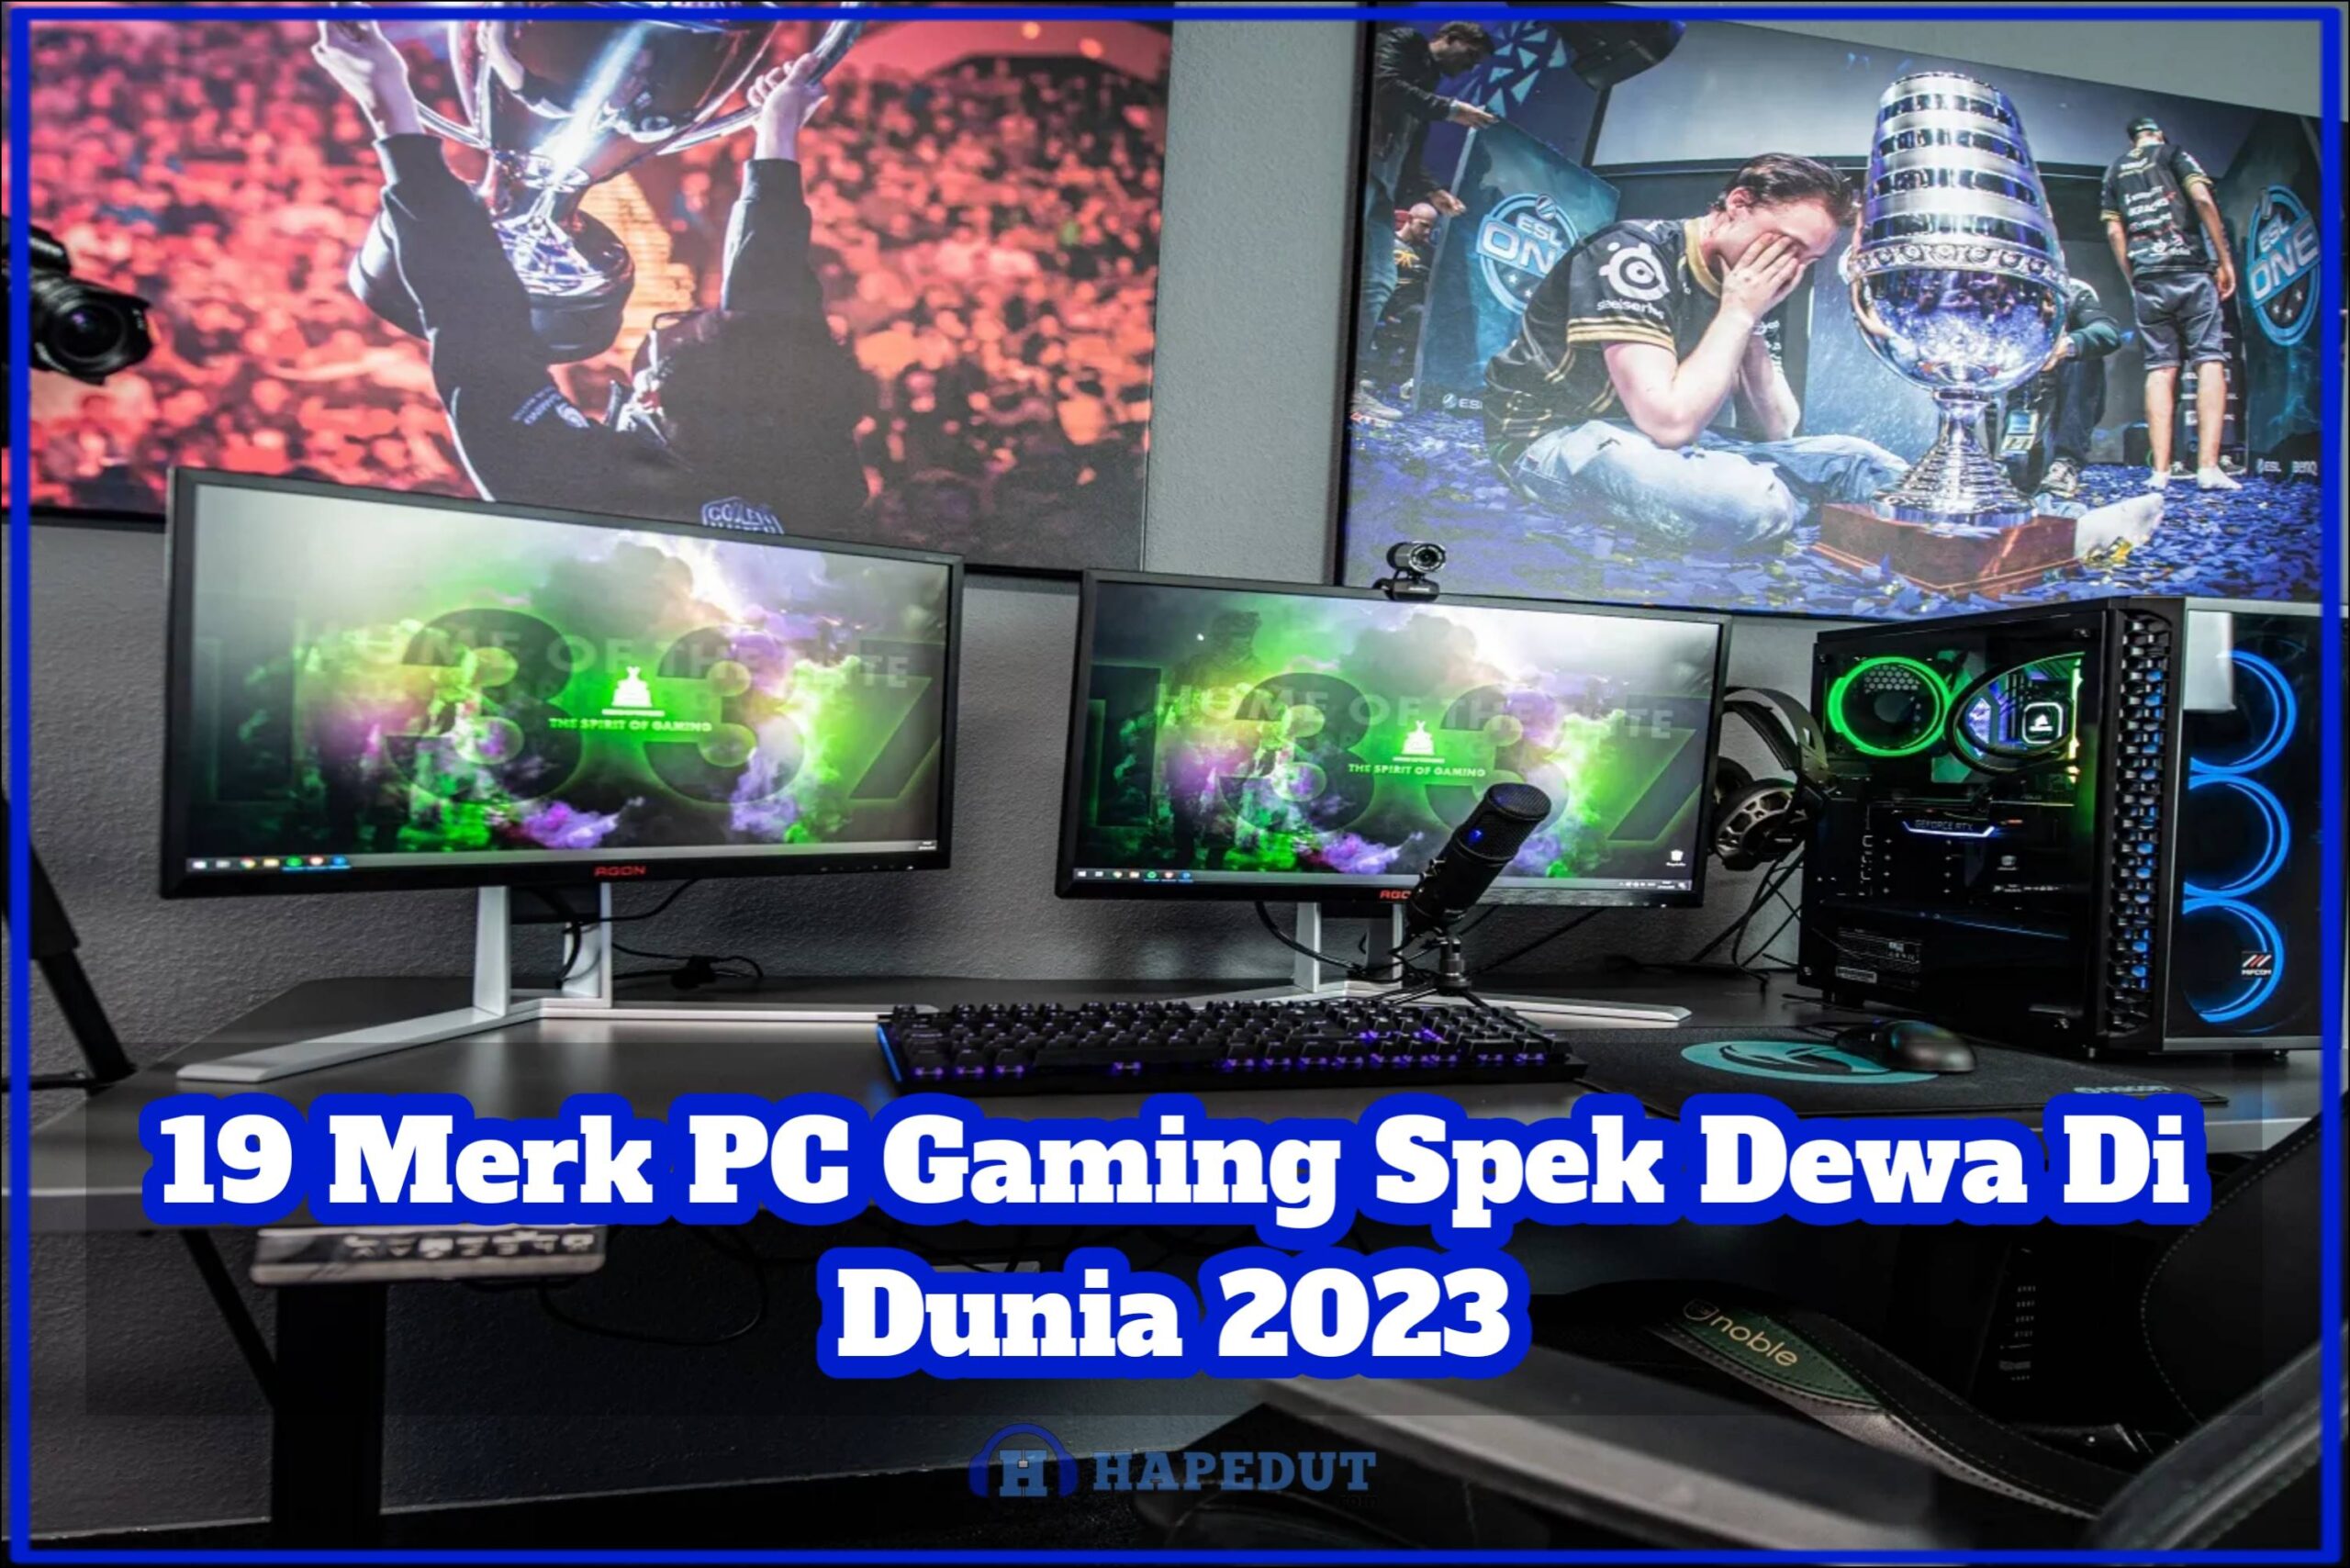 19 Merk PC Gaming Spek Dewa Di Dunia 2023